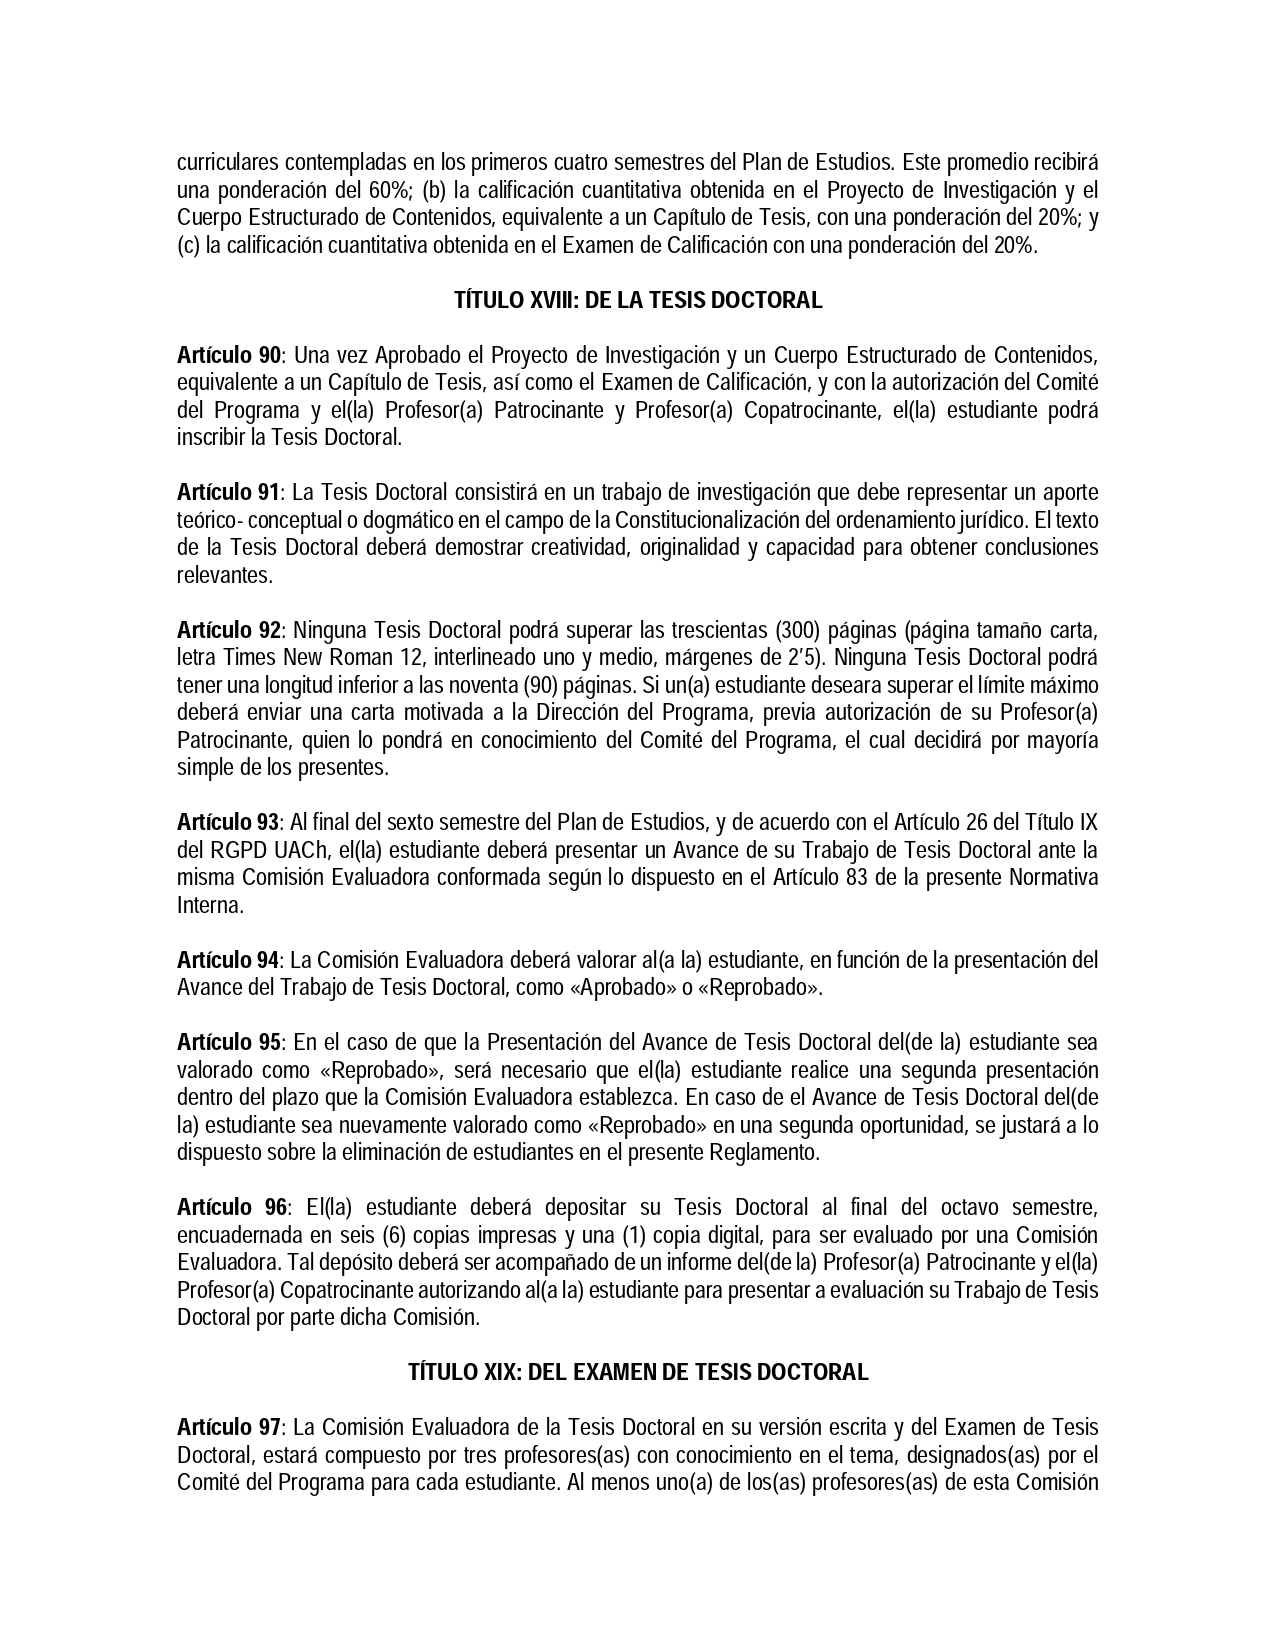 RESOL-FD-006-2021-Normativa-Interna-Doctorado-en-Derechopage-0016